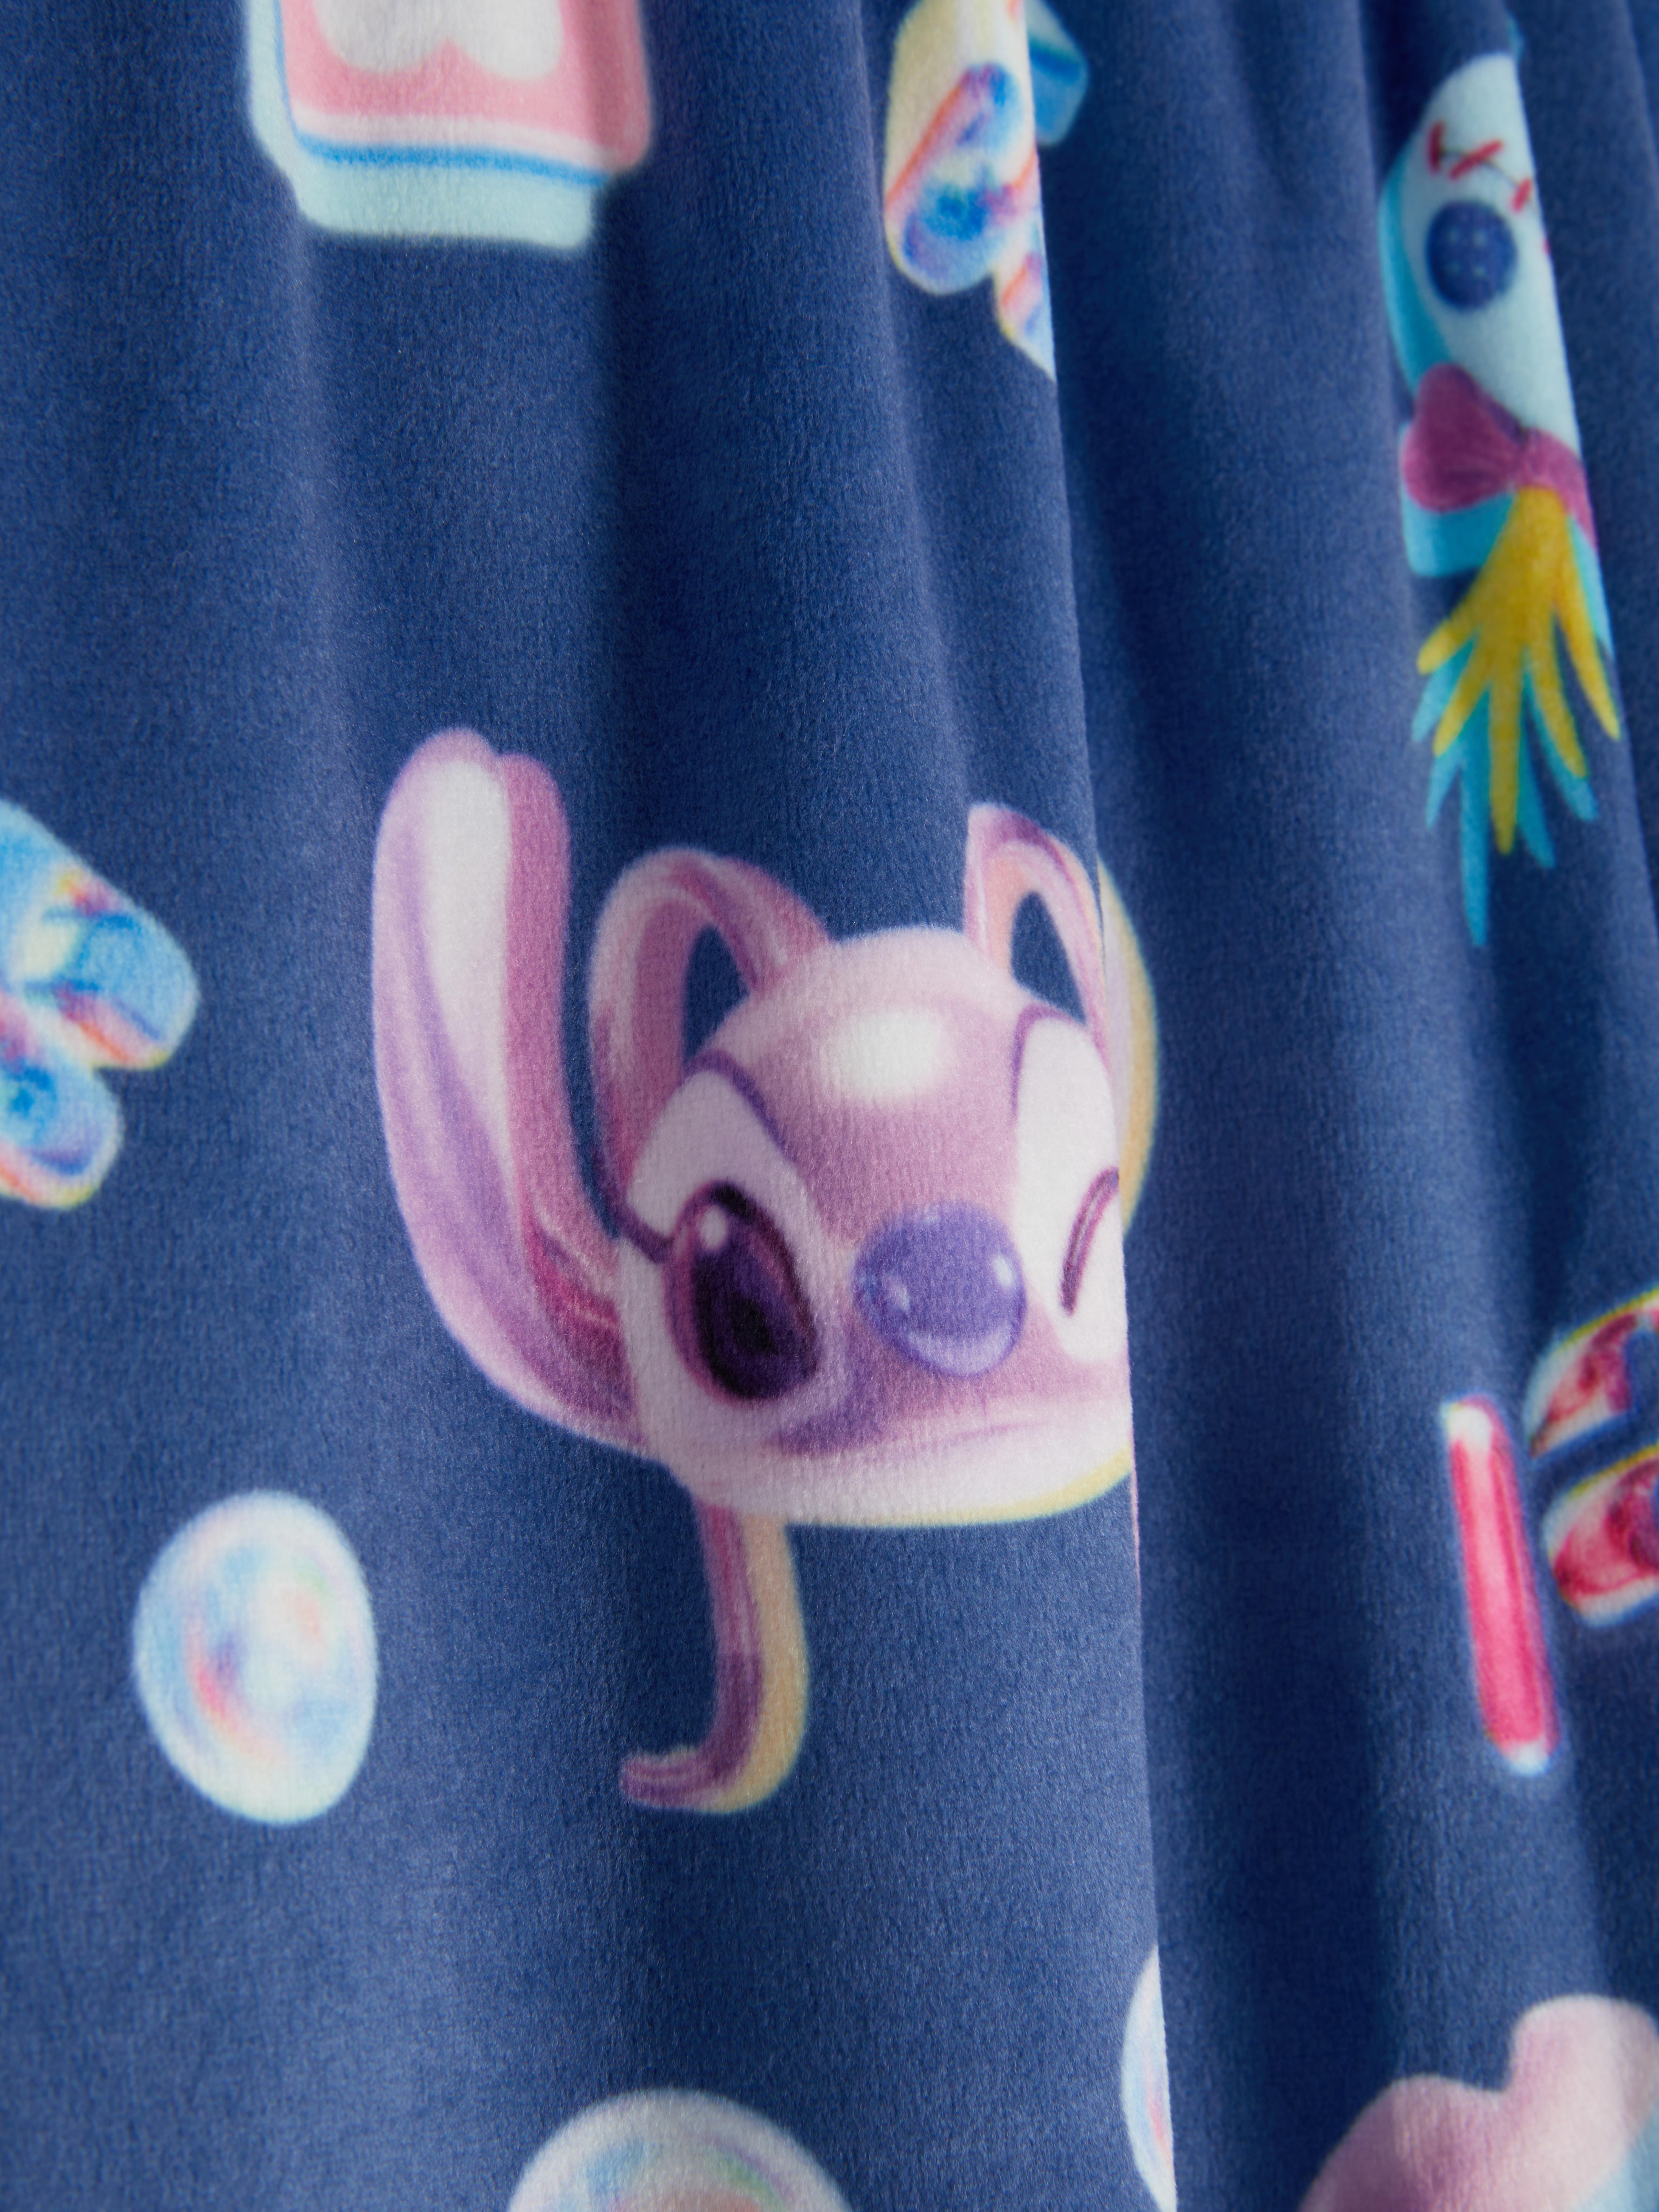 So much new Lilo & Stitch stuff in @Primark 🏃‍♀️ right now!! Share wi